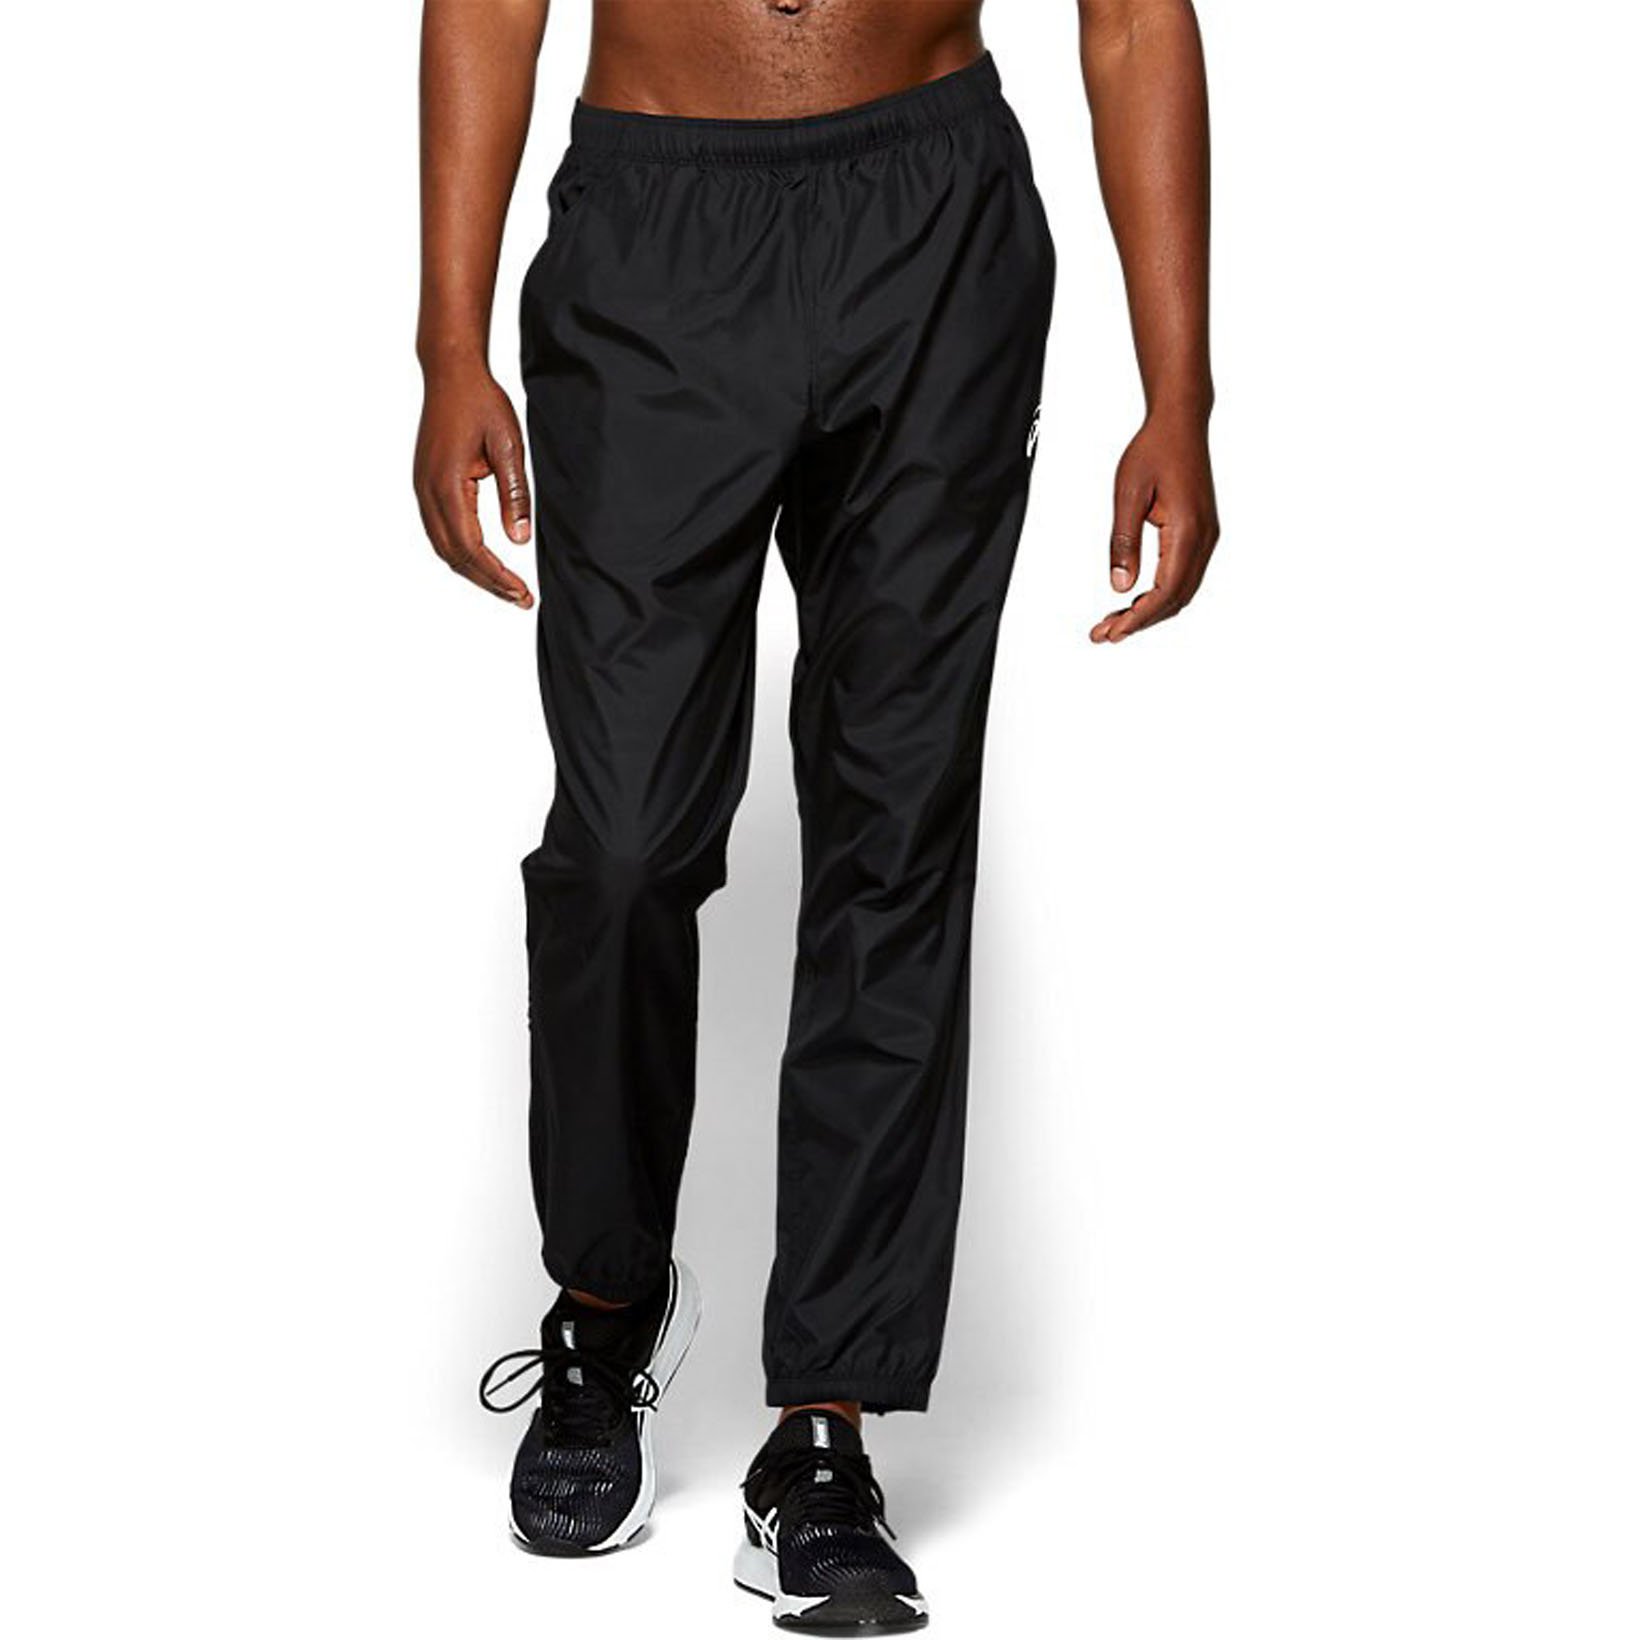 фото Спортивные брюки мужские asics silver woven черные 52-54 ru